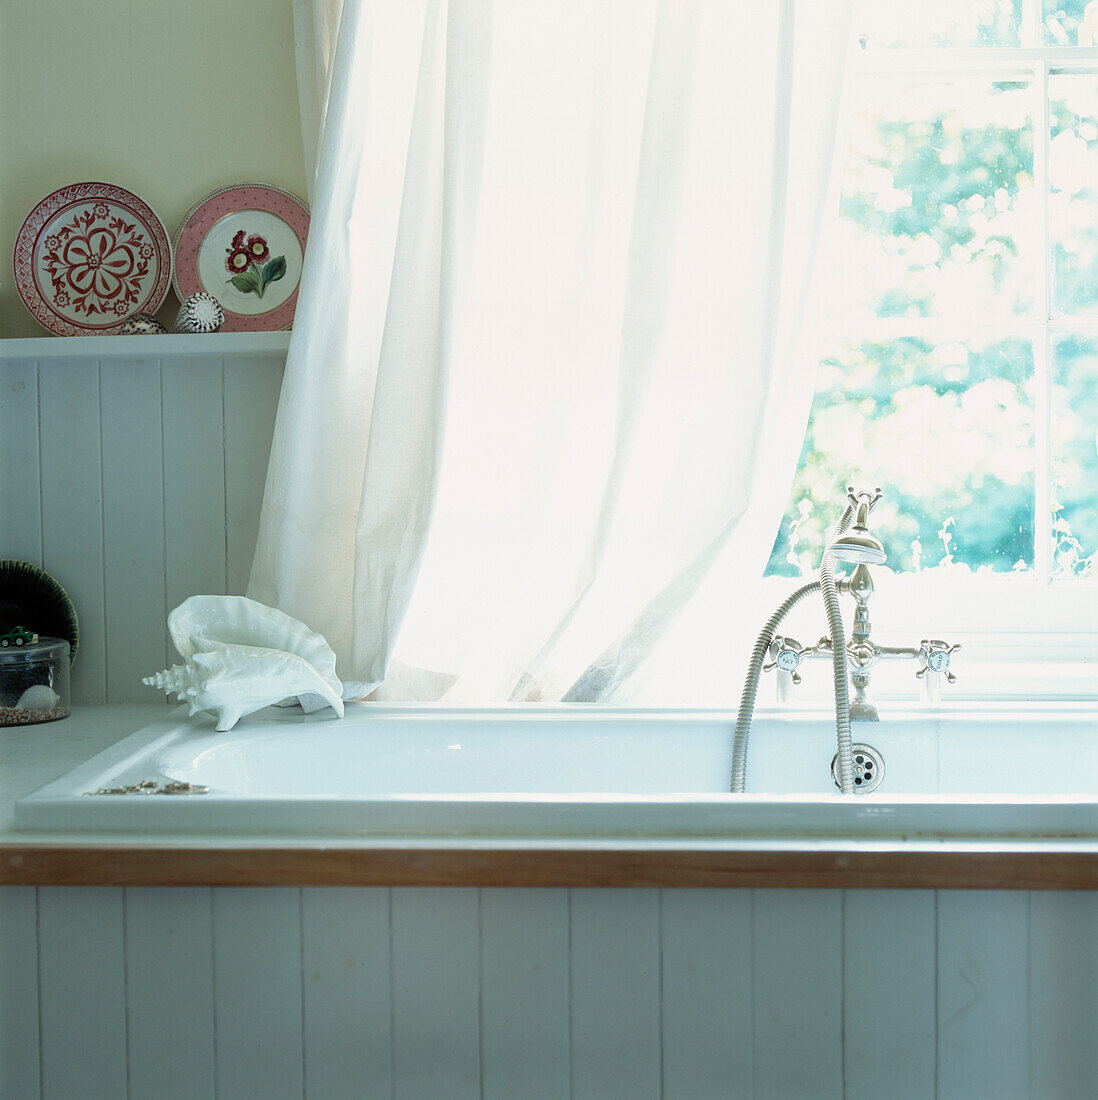 Große Badewanne mit alten Armaturen unter dem Fenster in weiß getäfeltem Bad